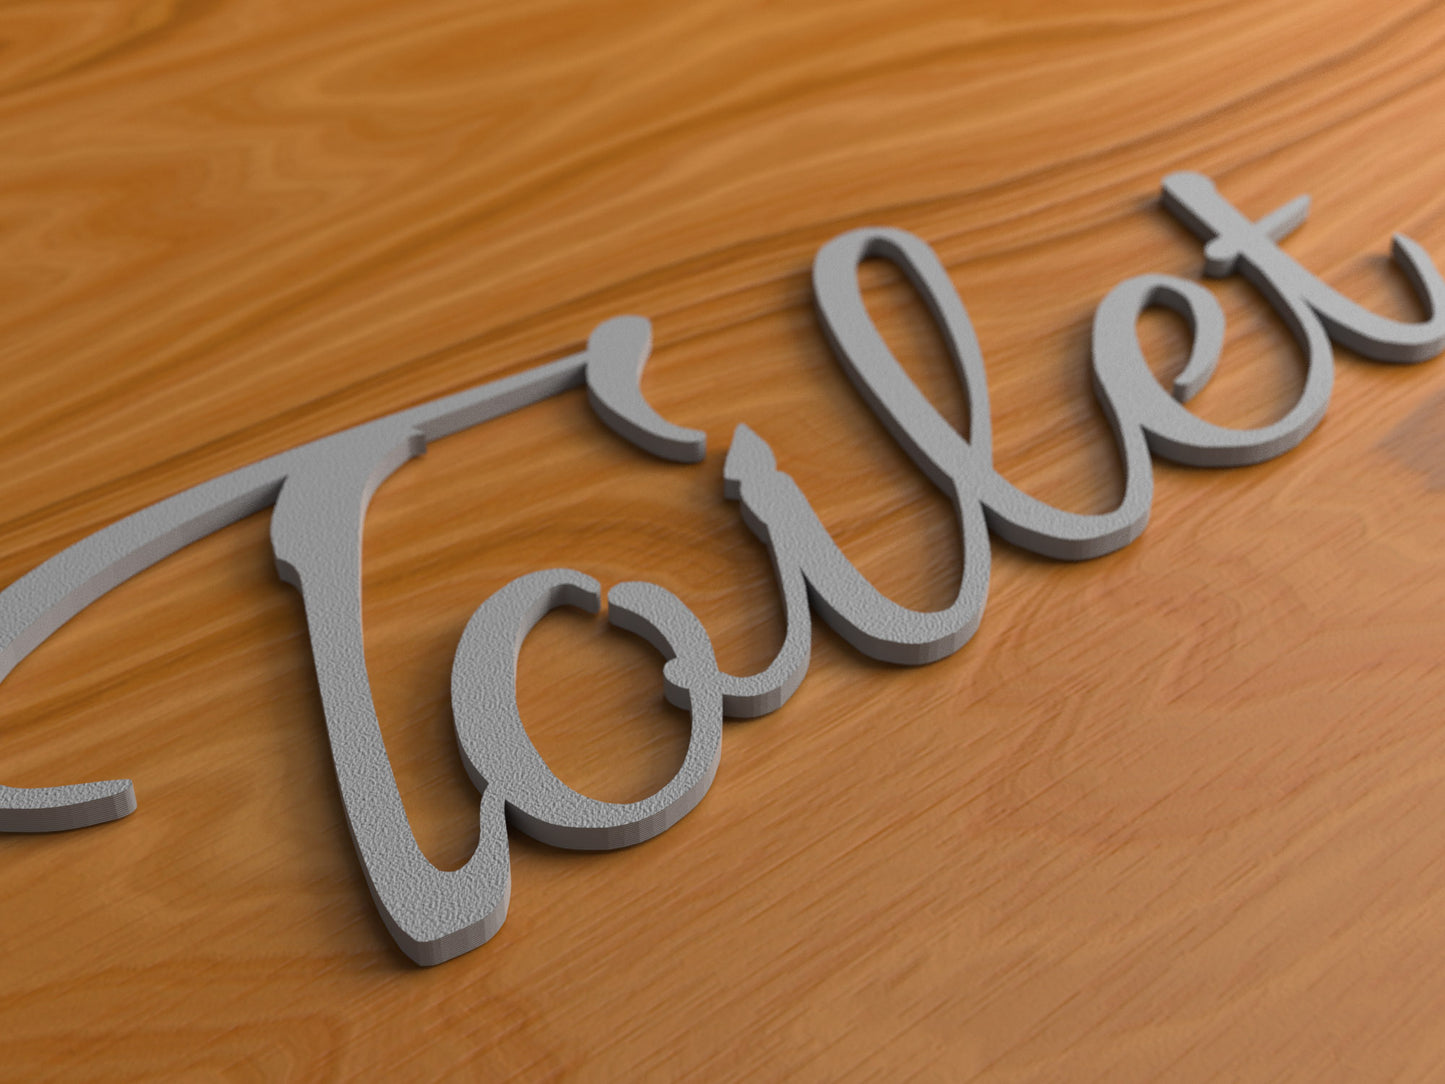 Toilet Türschild 3D Schriftzüge Selbstklebend